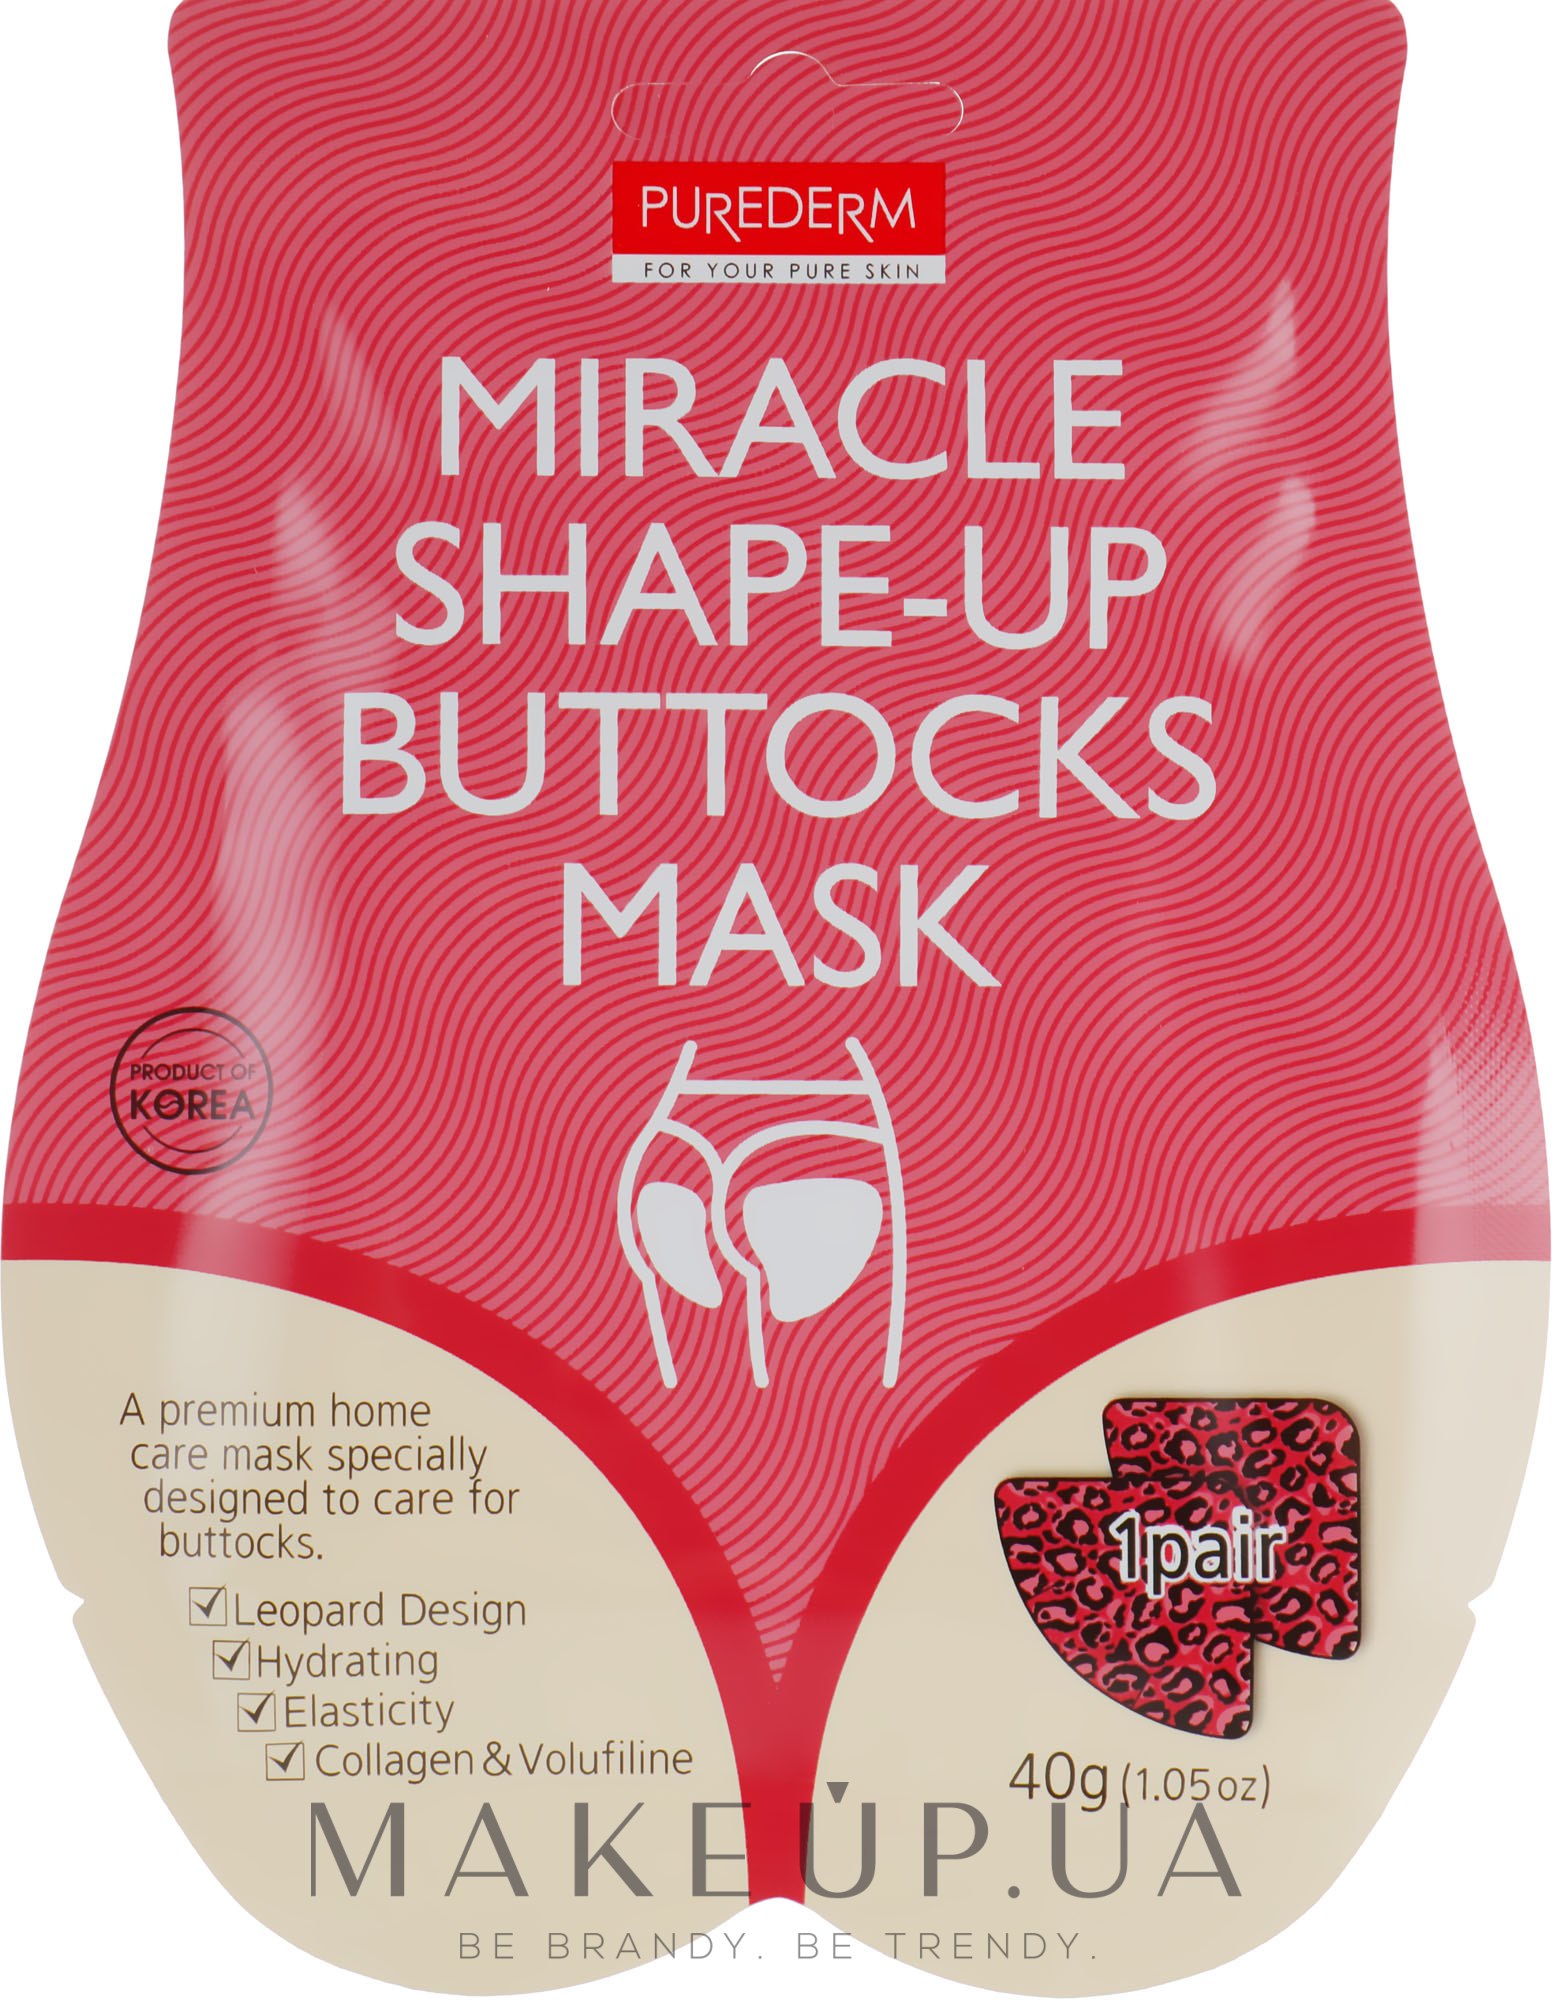 Маска-ліфтинг для інтенсивної підтяжки сідниць - Purederm Miracle Shape-Up Buttocks Mask — фото 40g